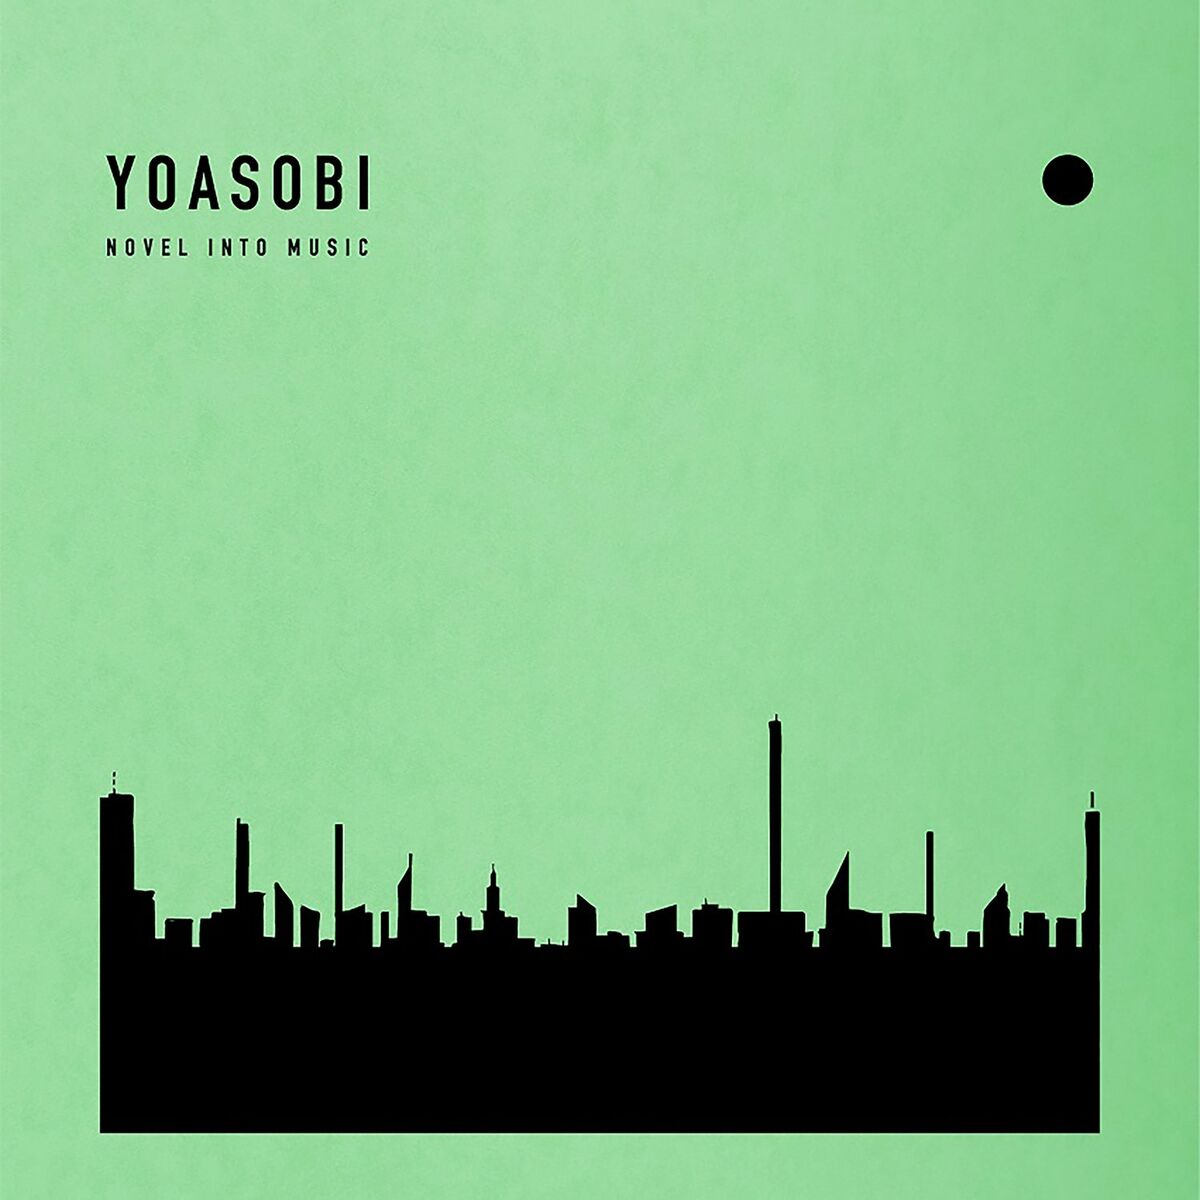 YOASOBI - THE BOOK: lyrics and songs | Deezer